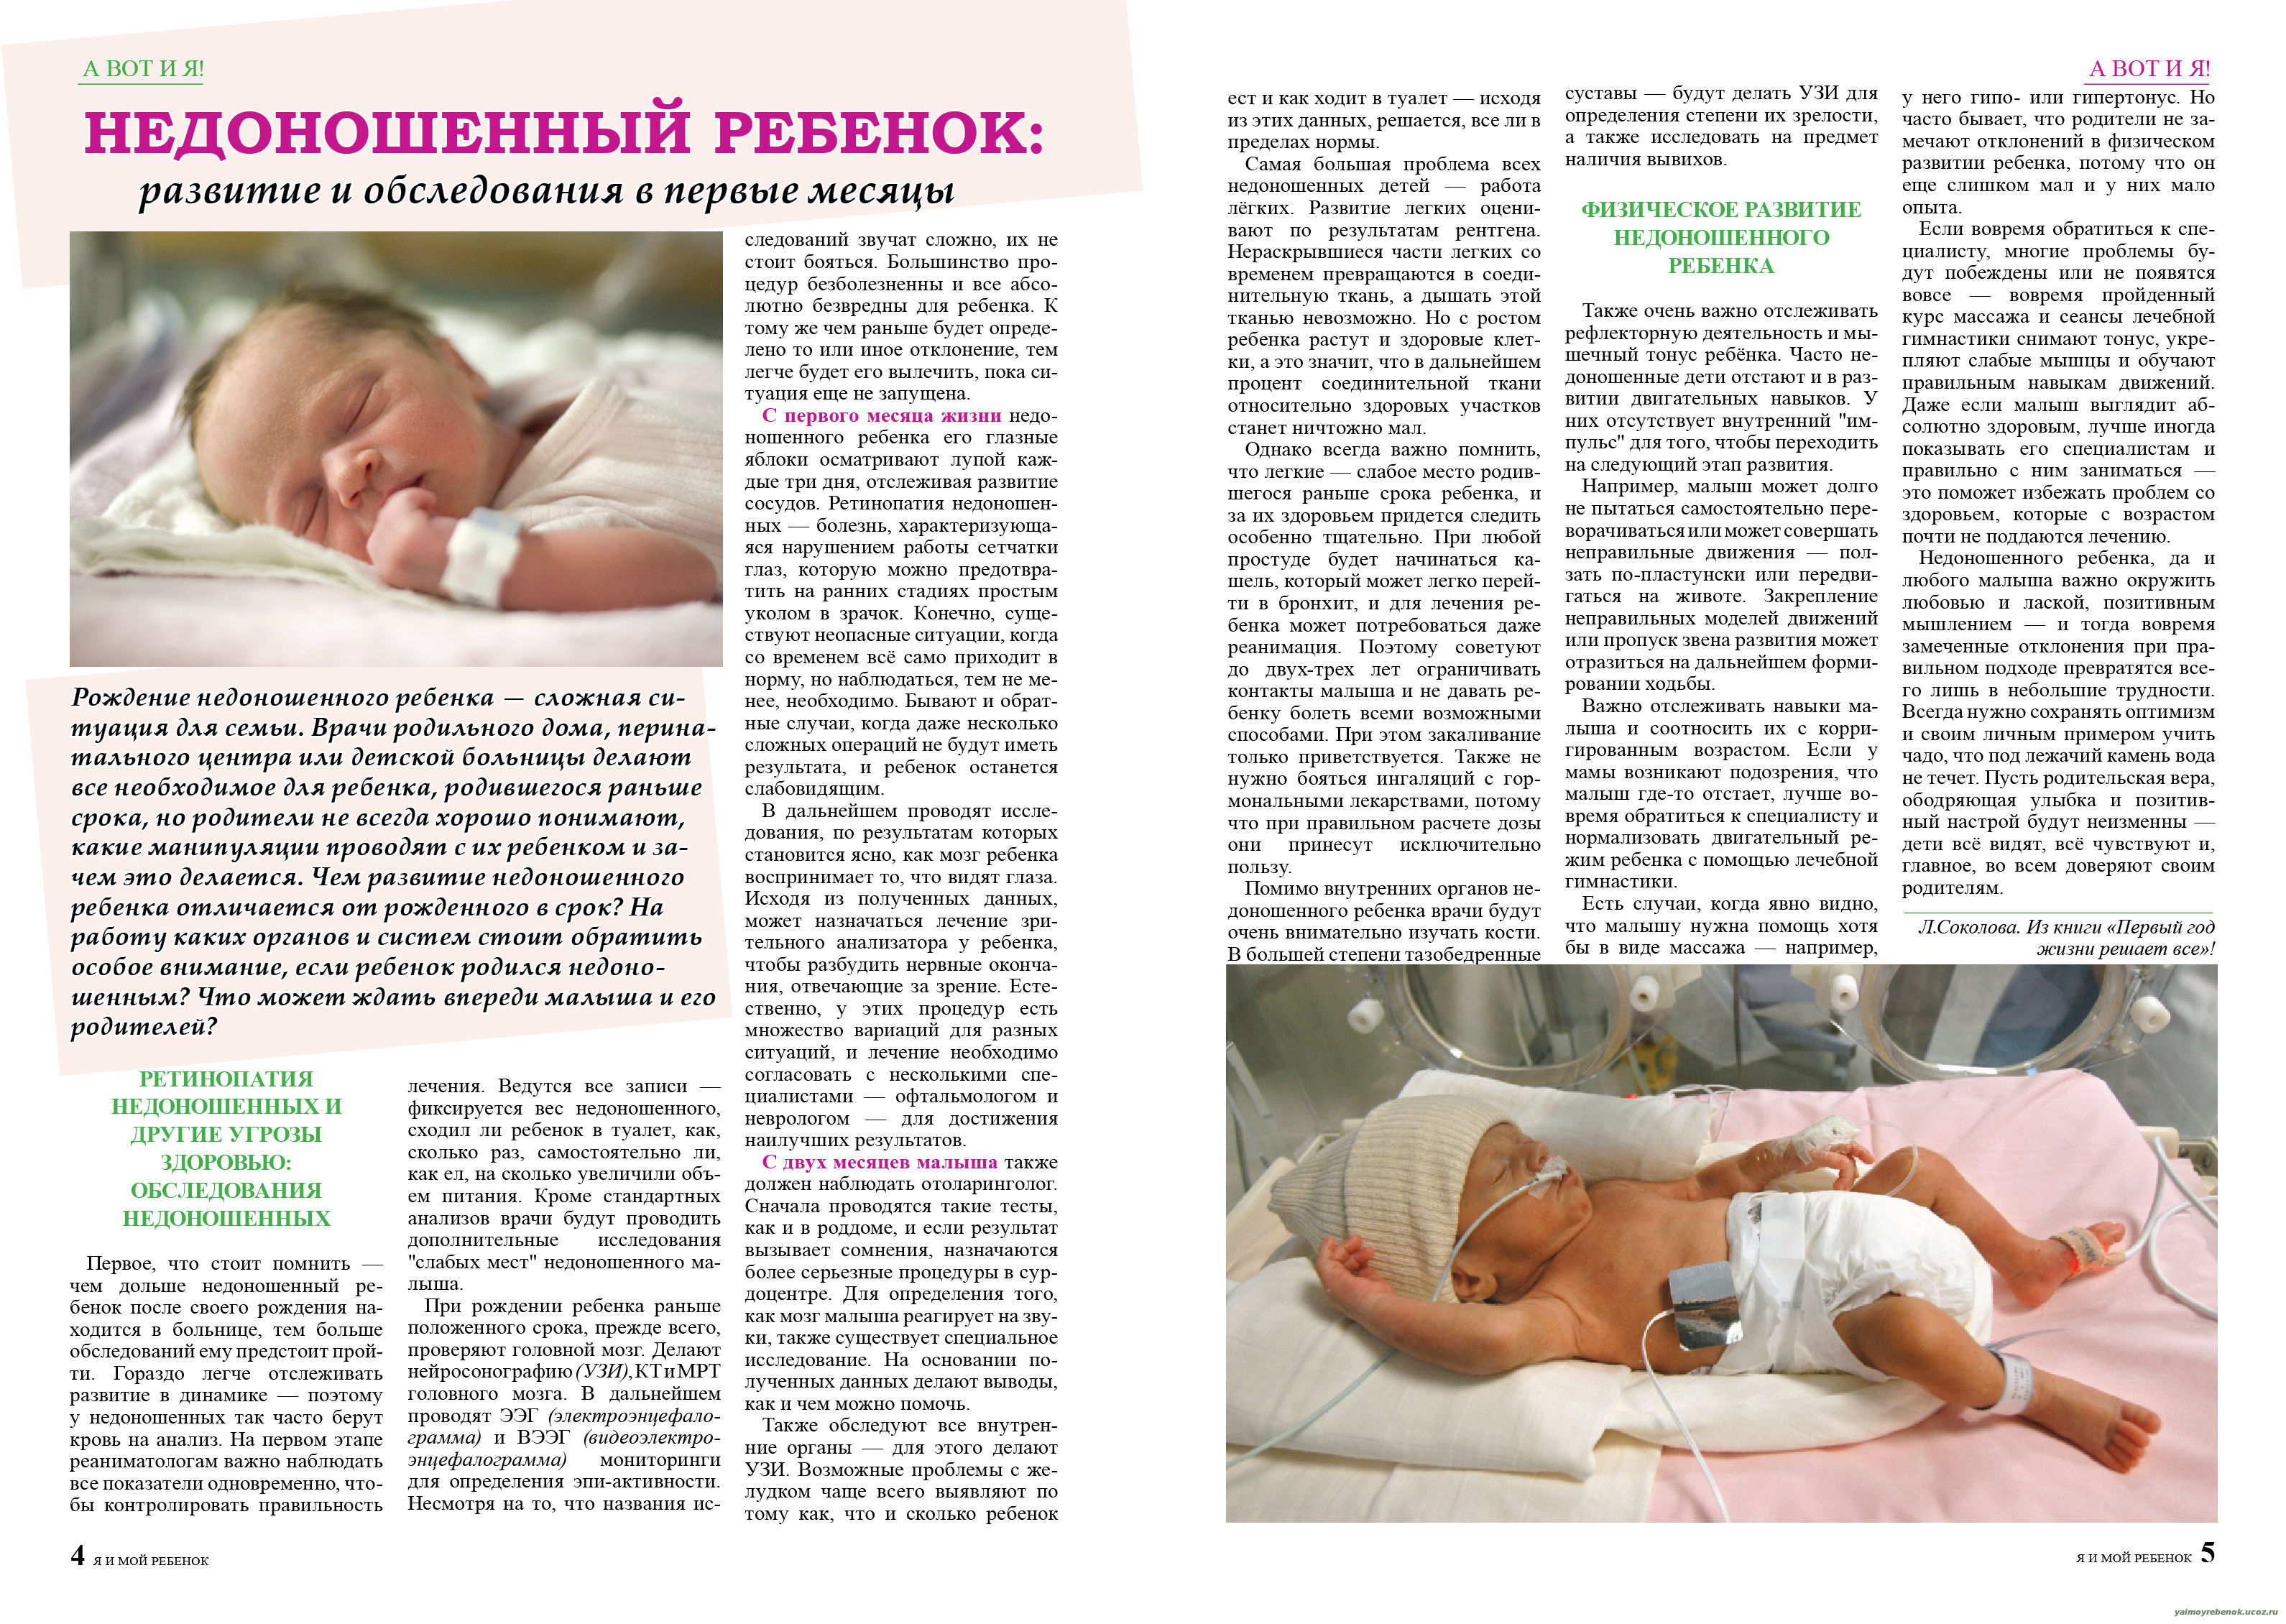 Первый месяц жизни новорожденного. как правильно ухаживать? | nutrilak